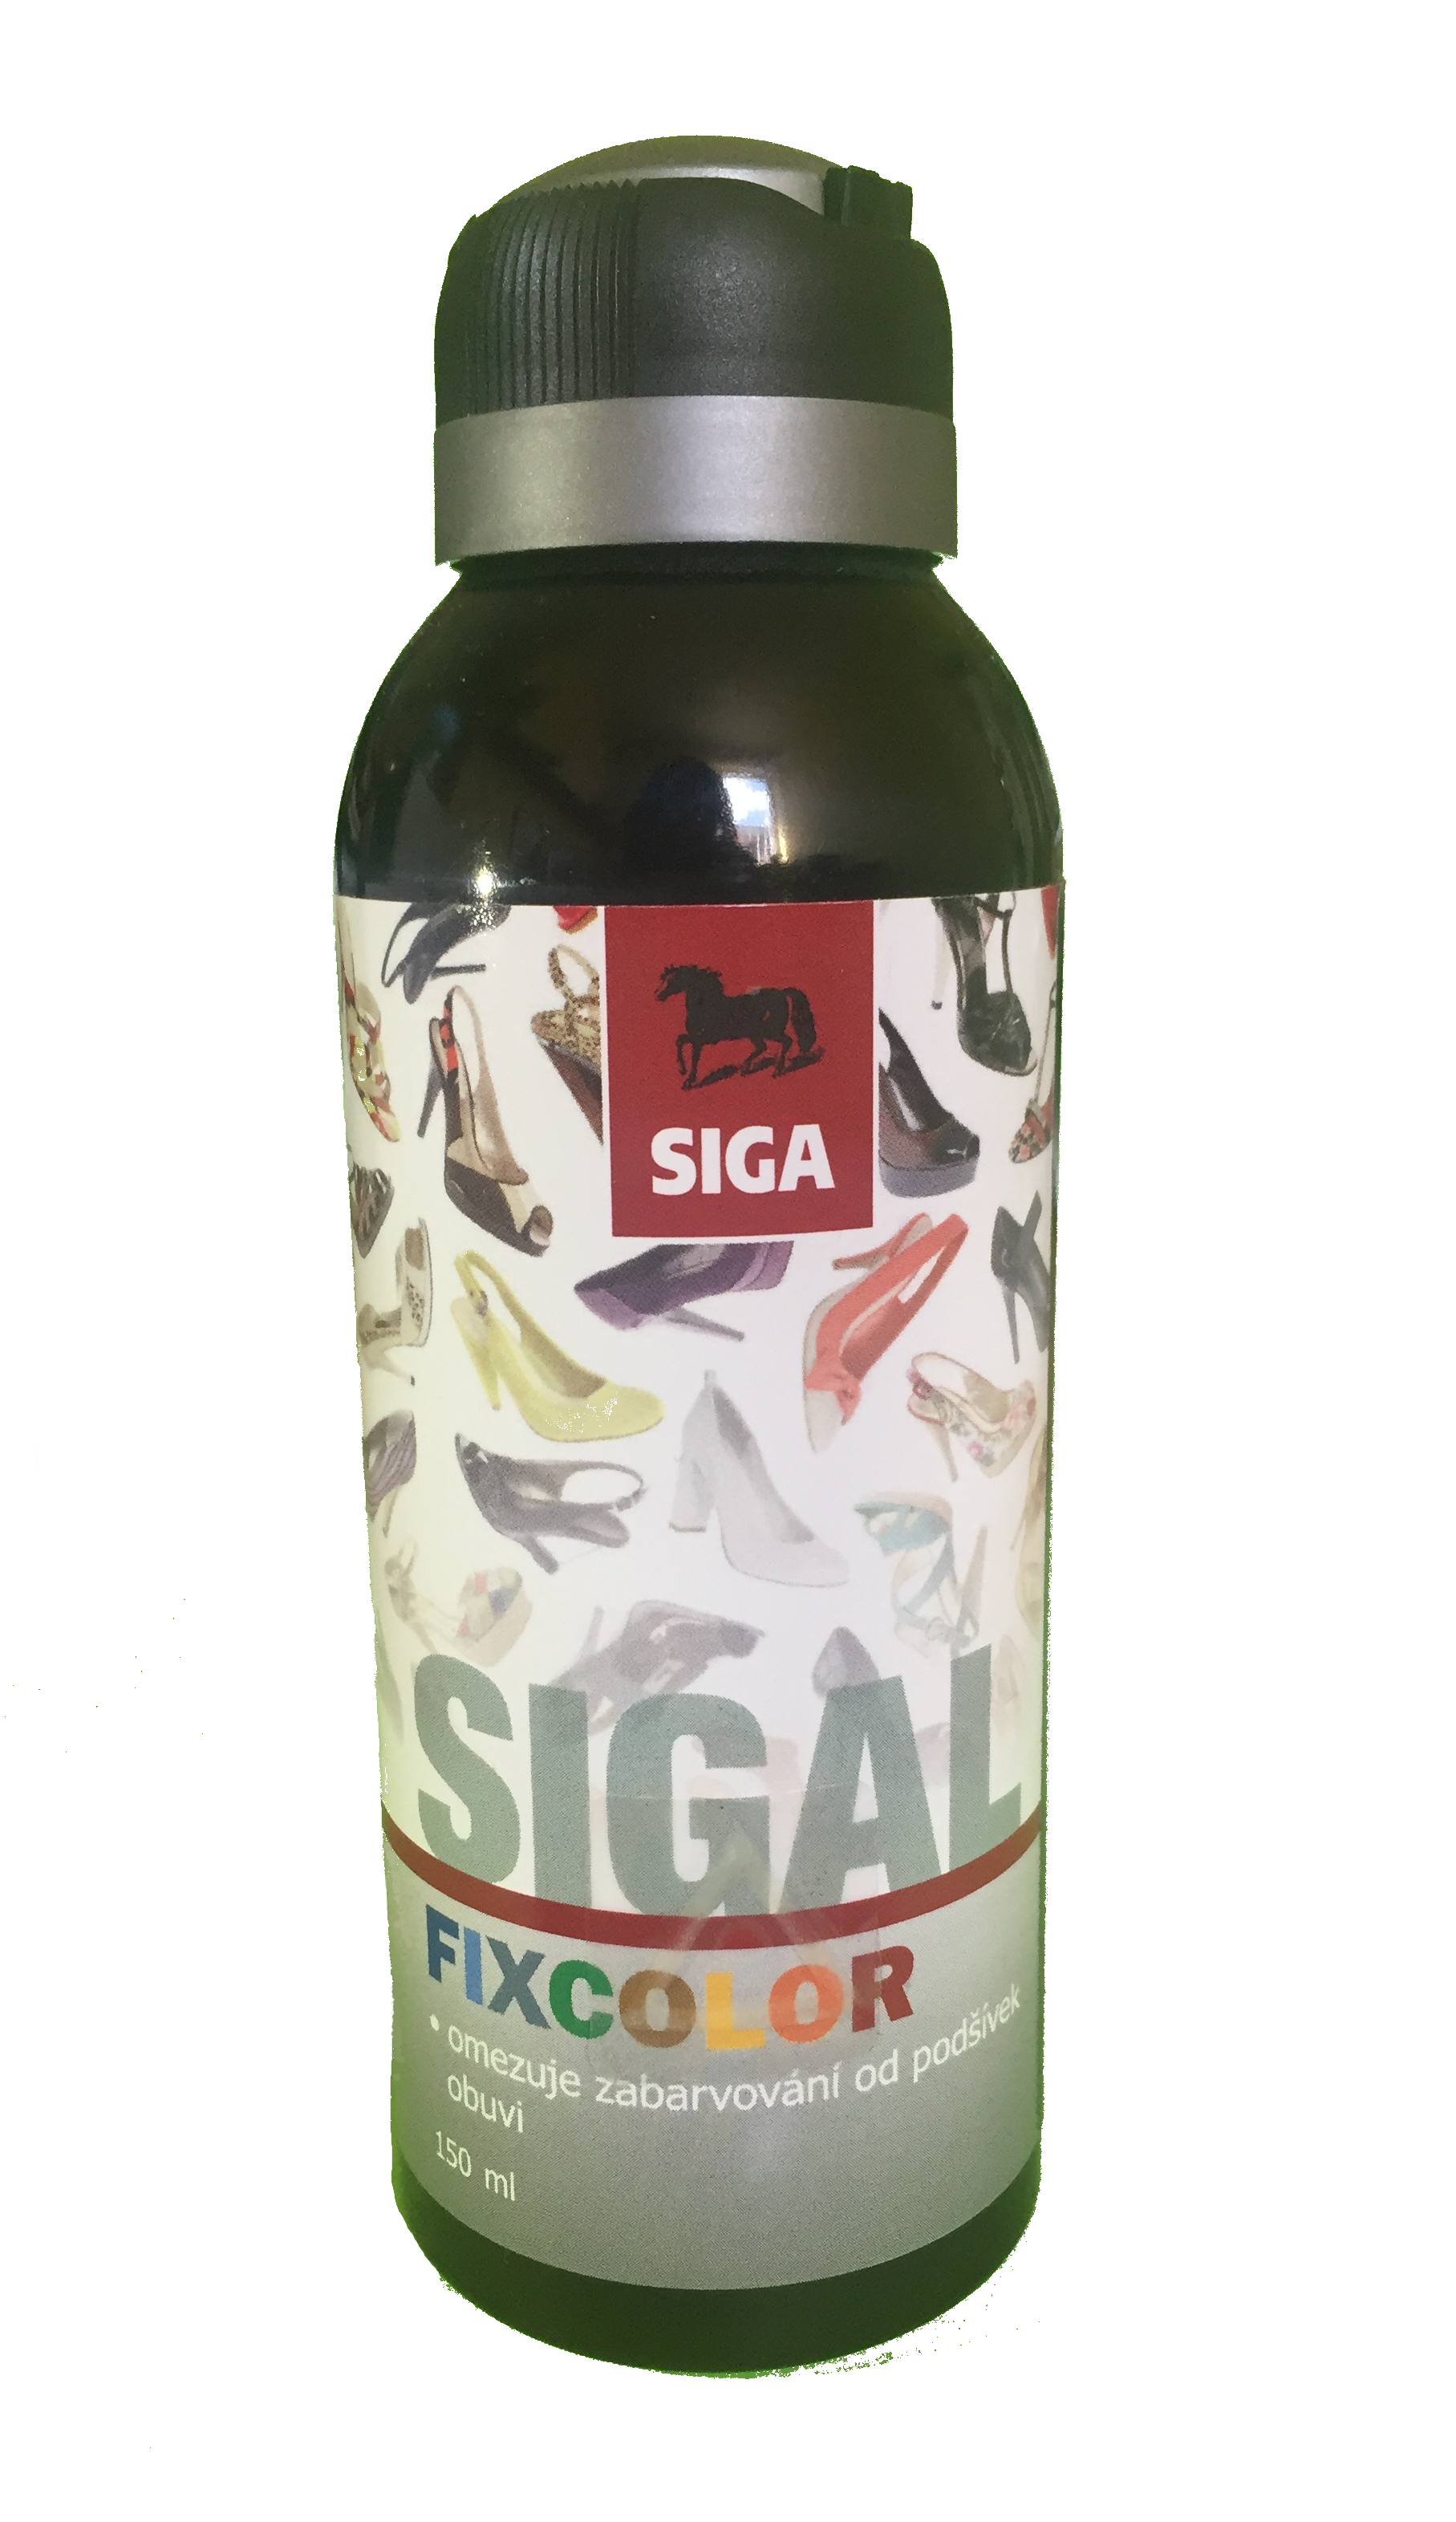 SIGAL Fixcolor proti zabarvování 150ml